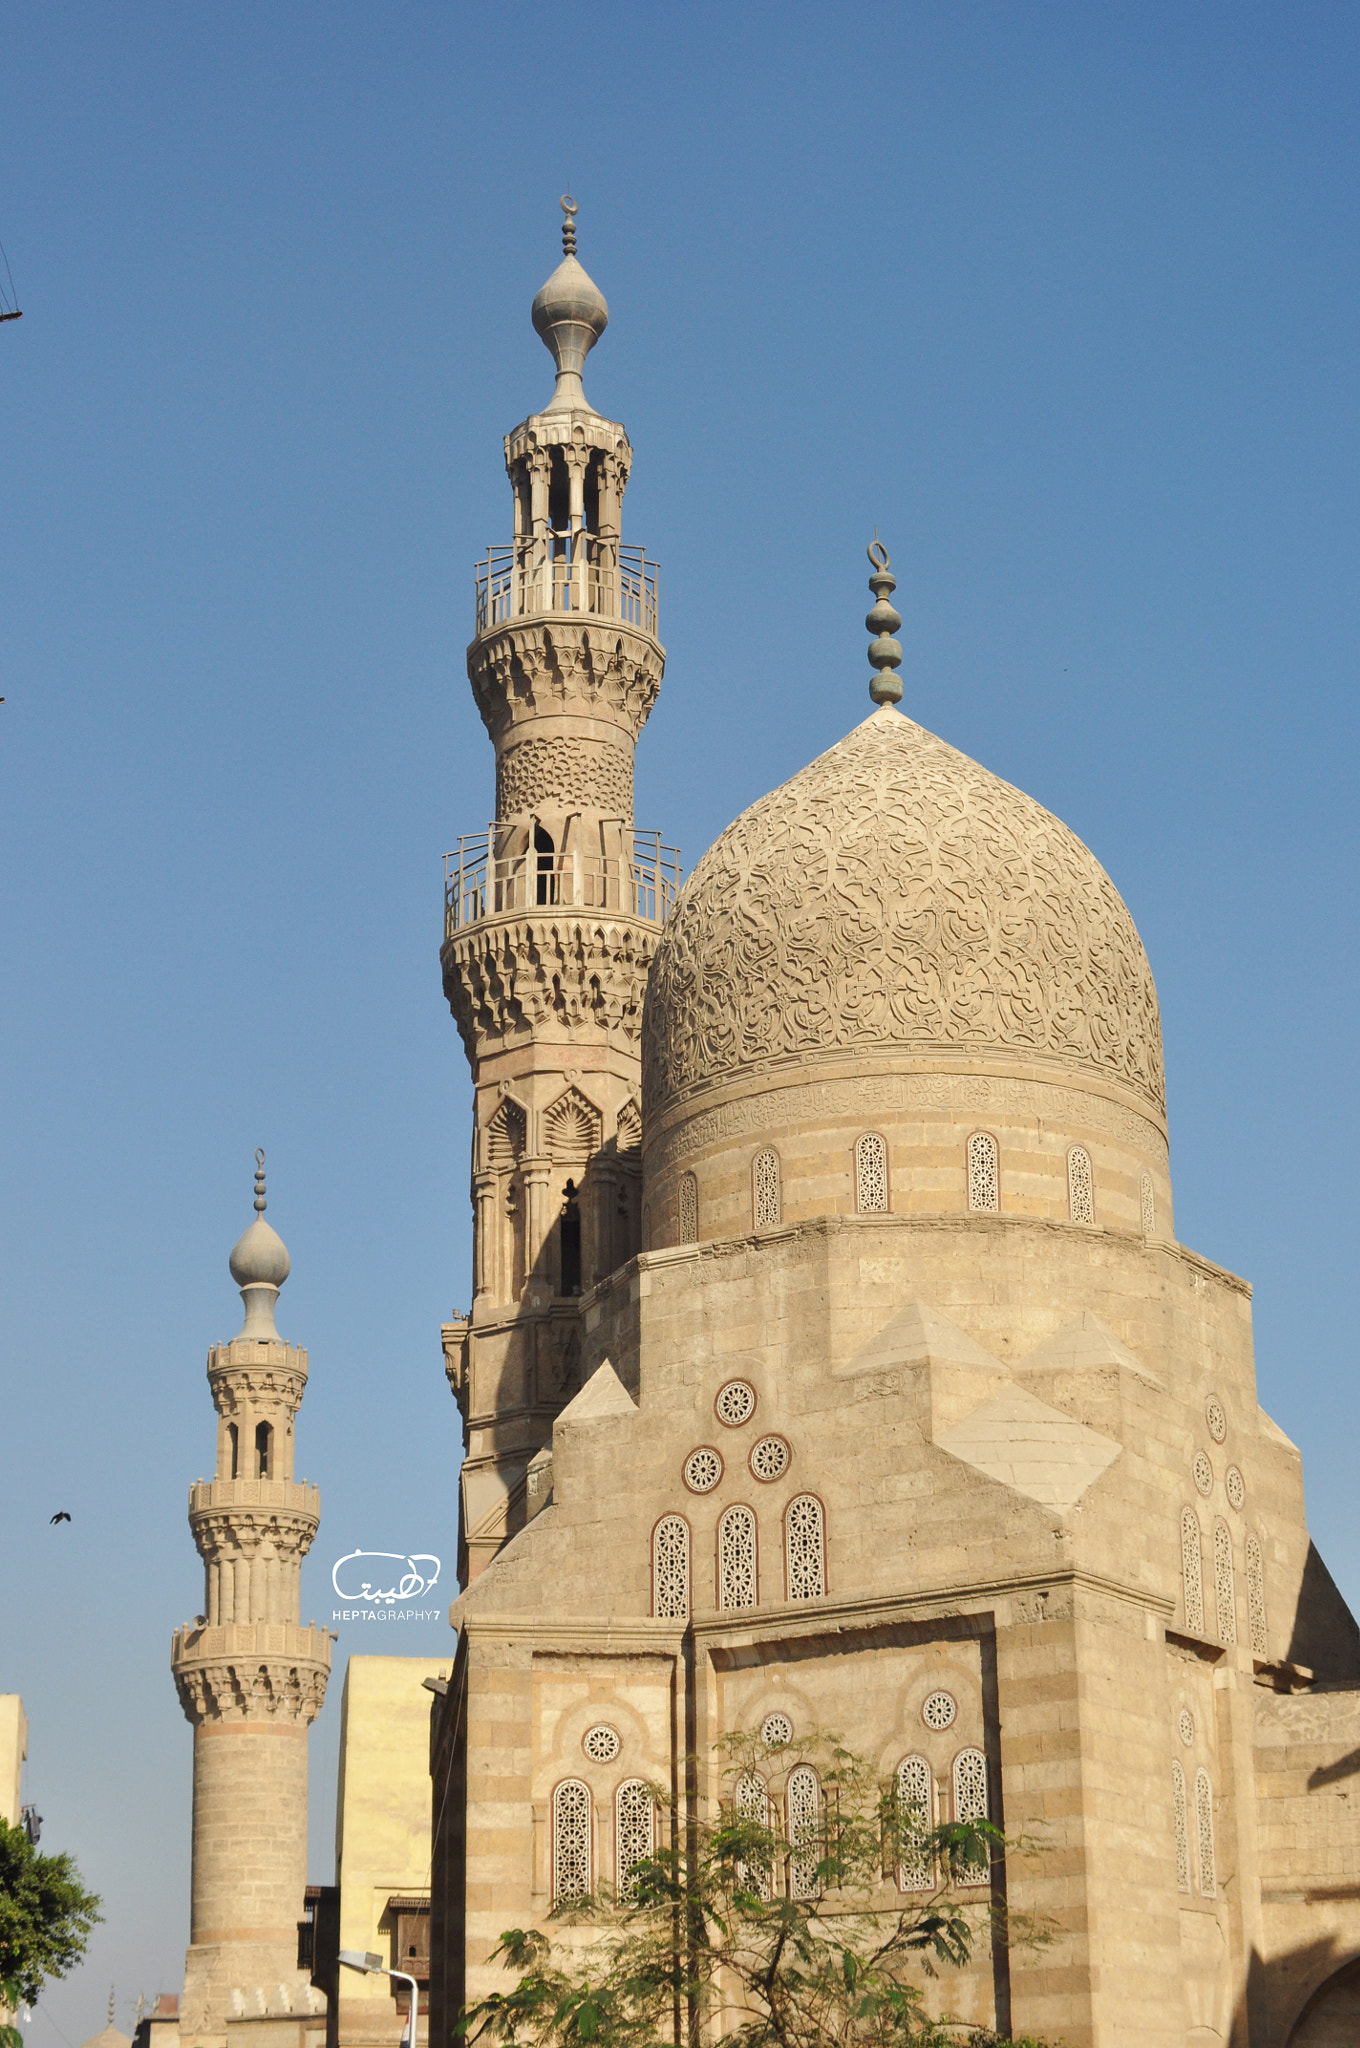 AF Zoom-Nikkor 35-135mm f/3.5-4.5 N sample photo. The kaire bek mosque ,egypt photography